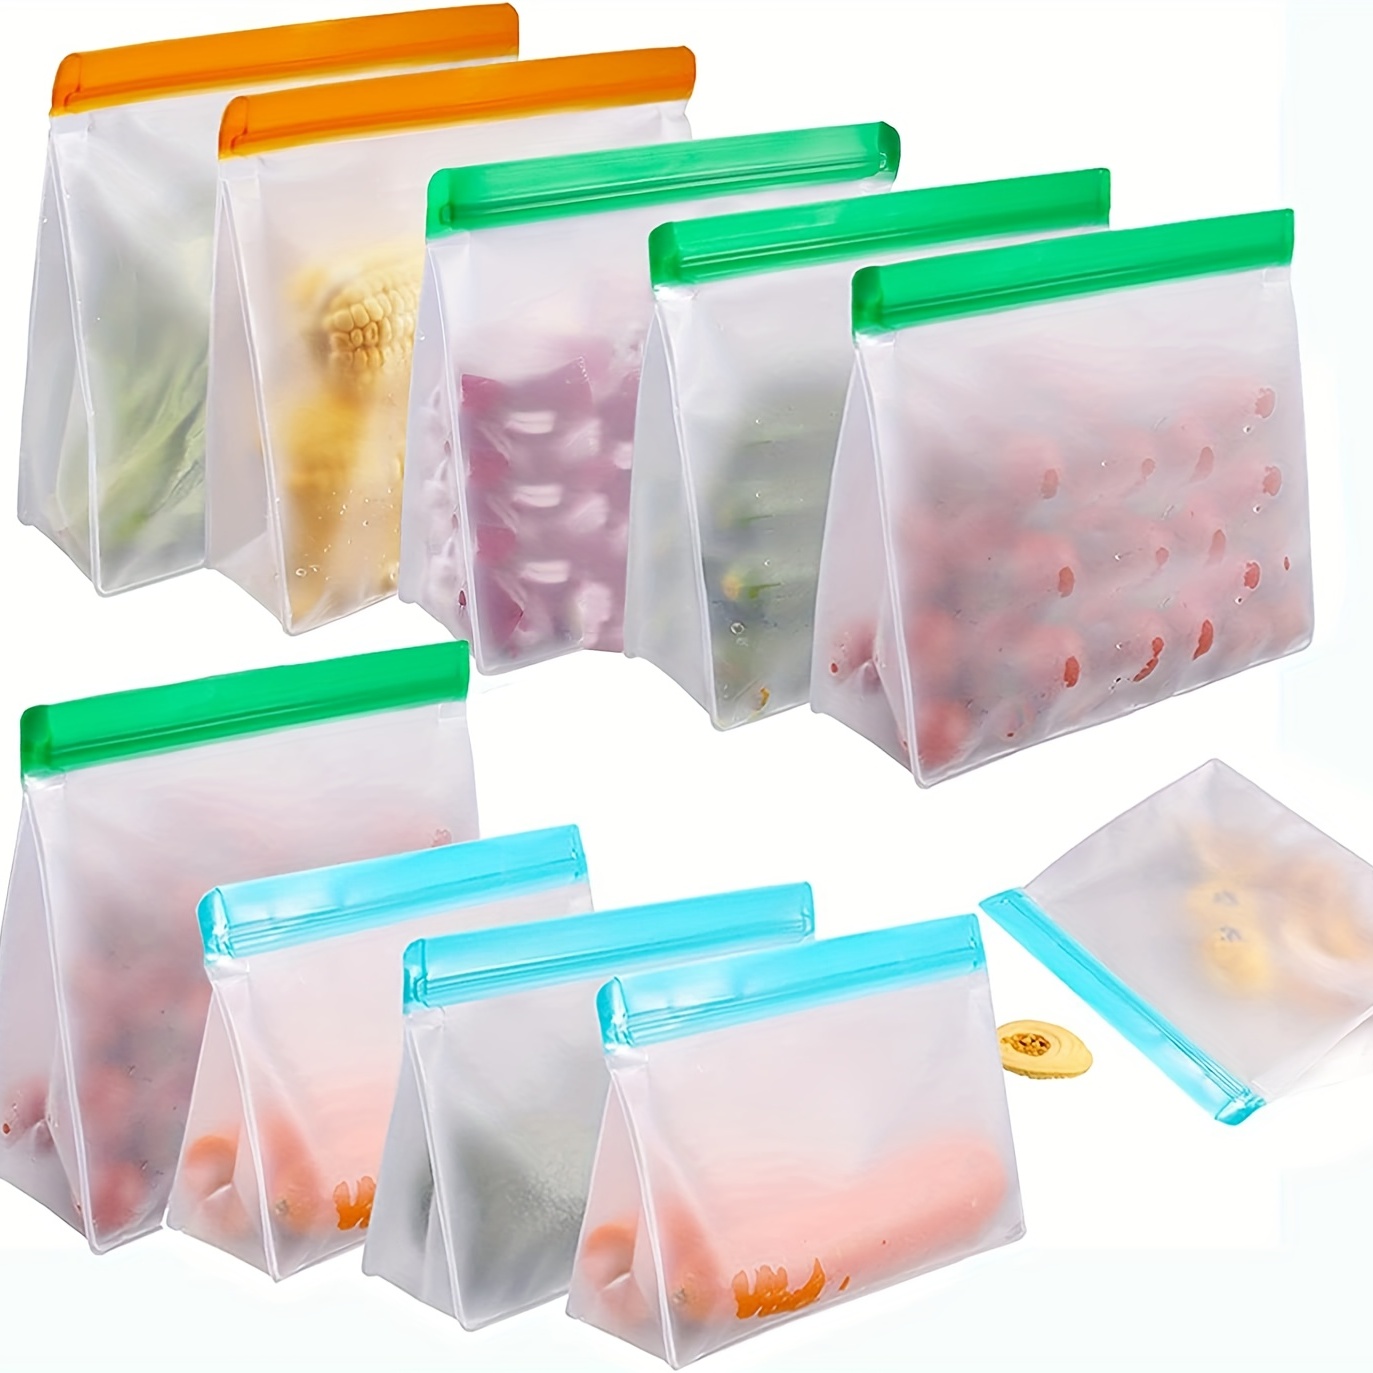 Reusable Gallon Freezer Bags - 6 Pack